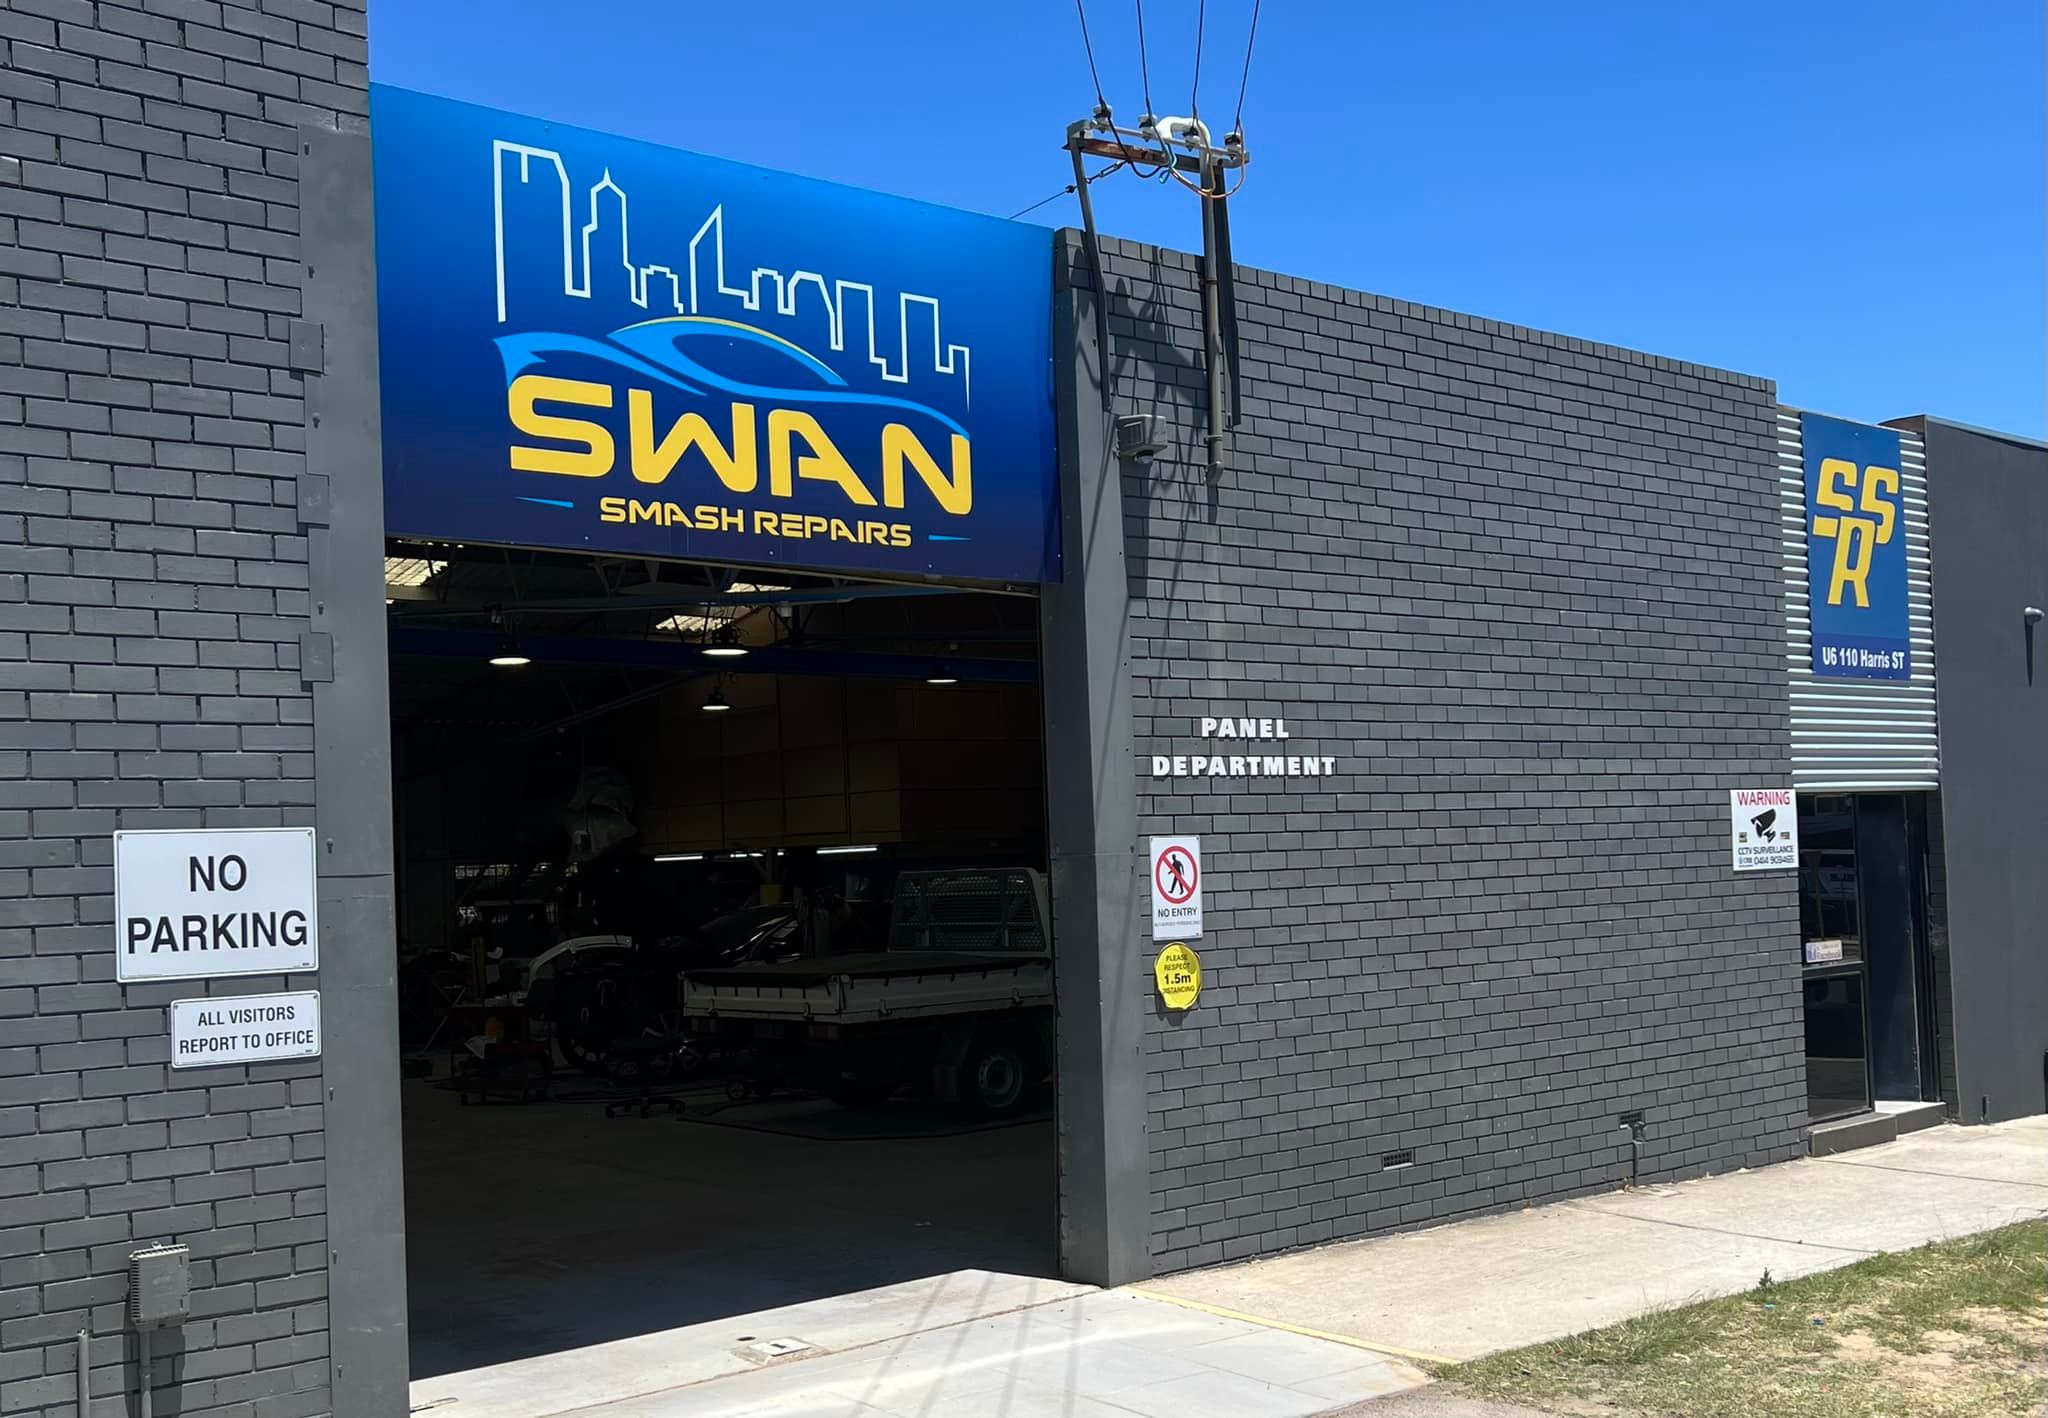 Swan Smash Repairs